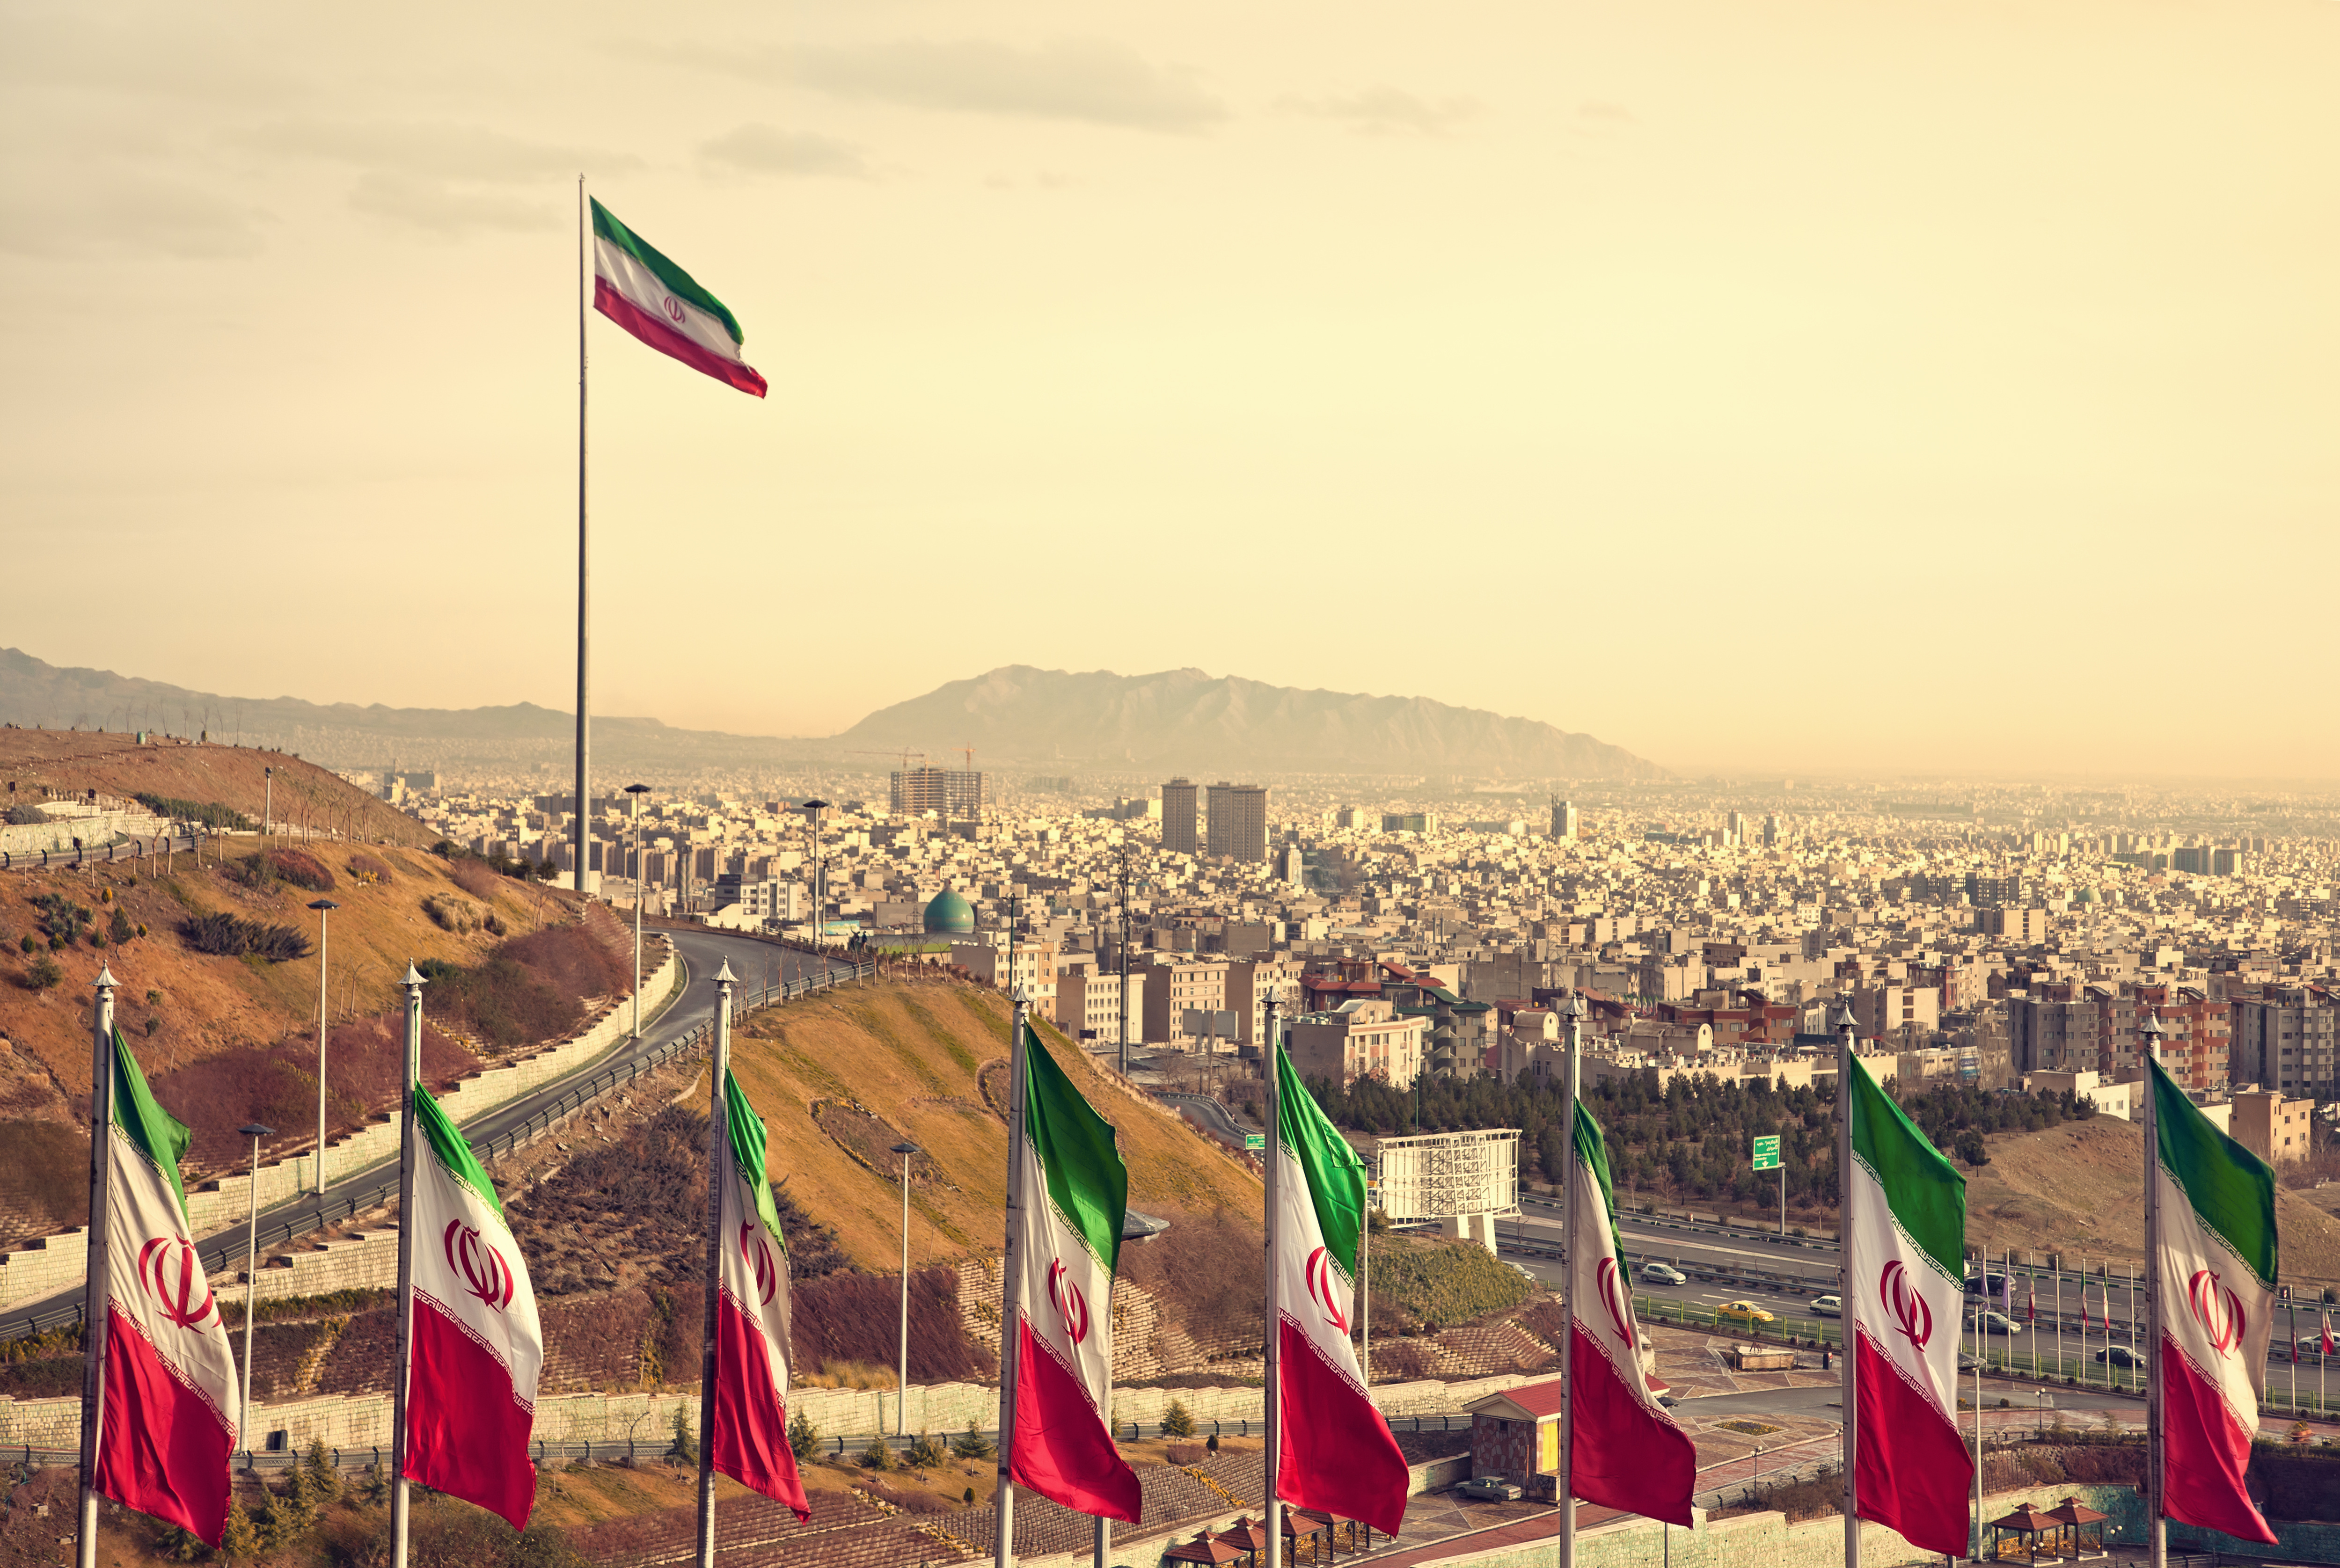 Preşedintele iranian Ebrahim Raisi ameninţă: Cea mai mică mişcare împotriva Iranului va avea un răspuns feroce, larg şi dureros împotriva tuturor făptuitorilor săi